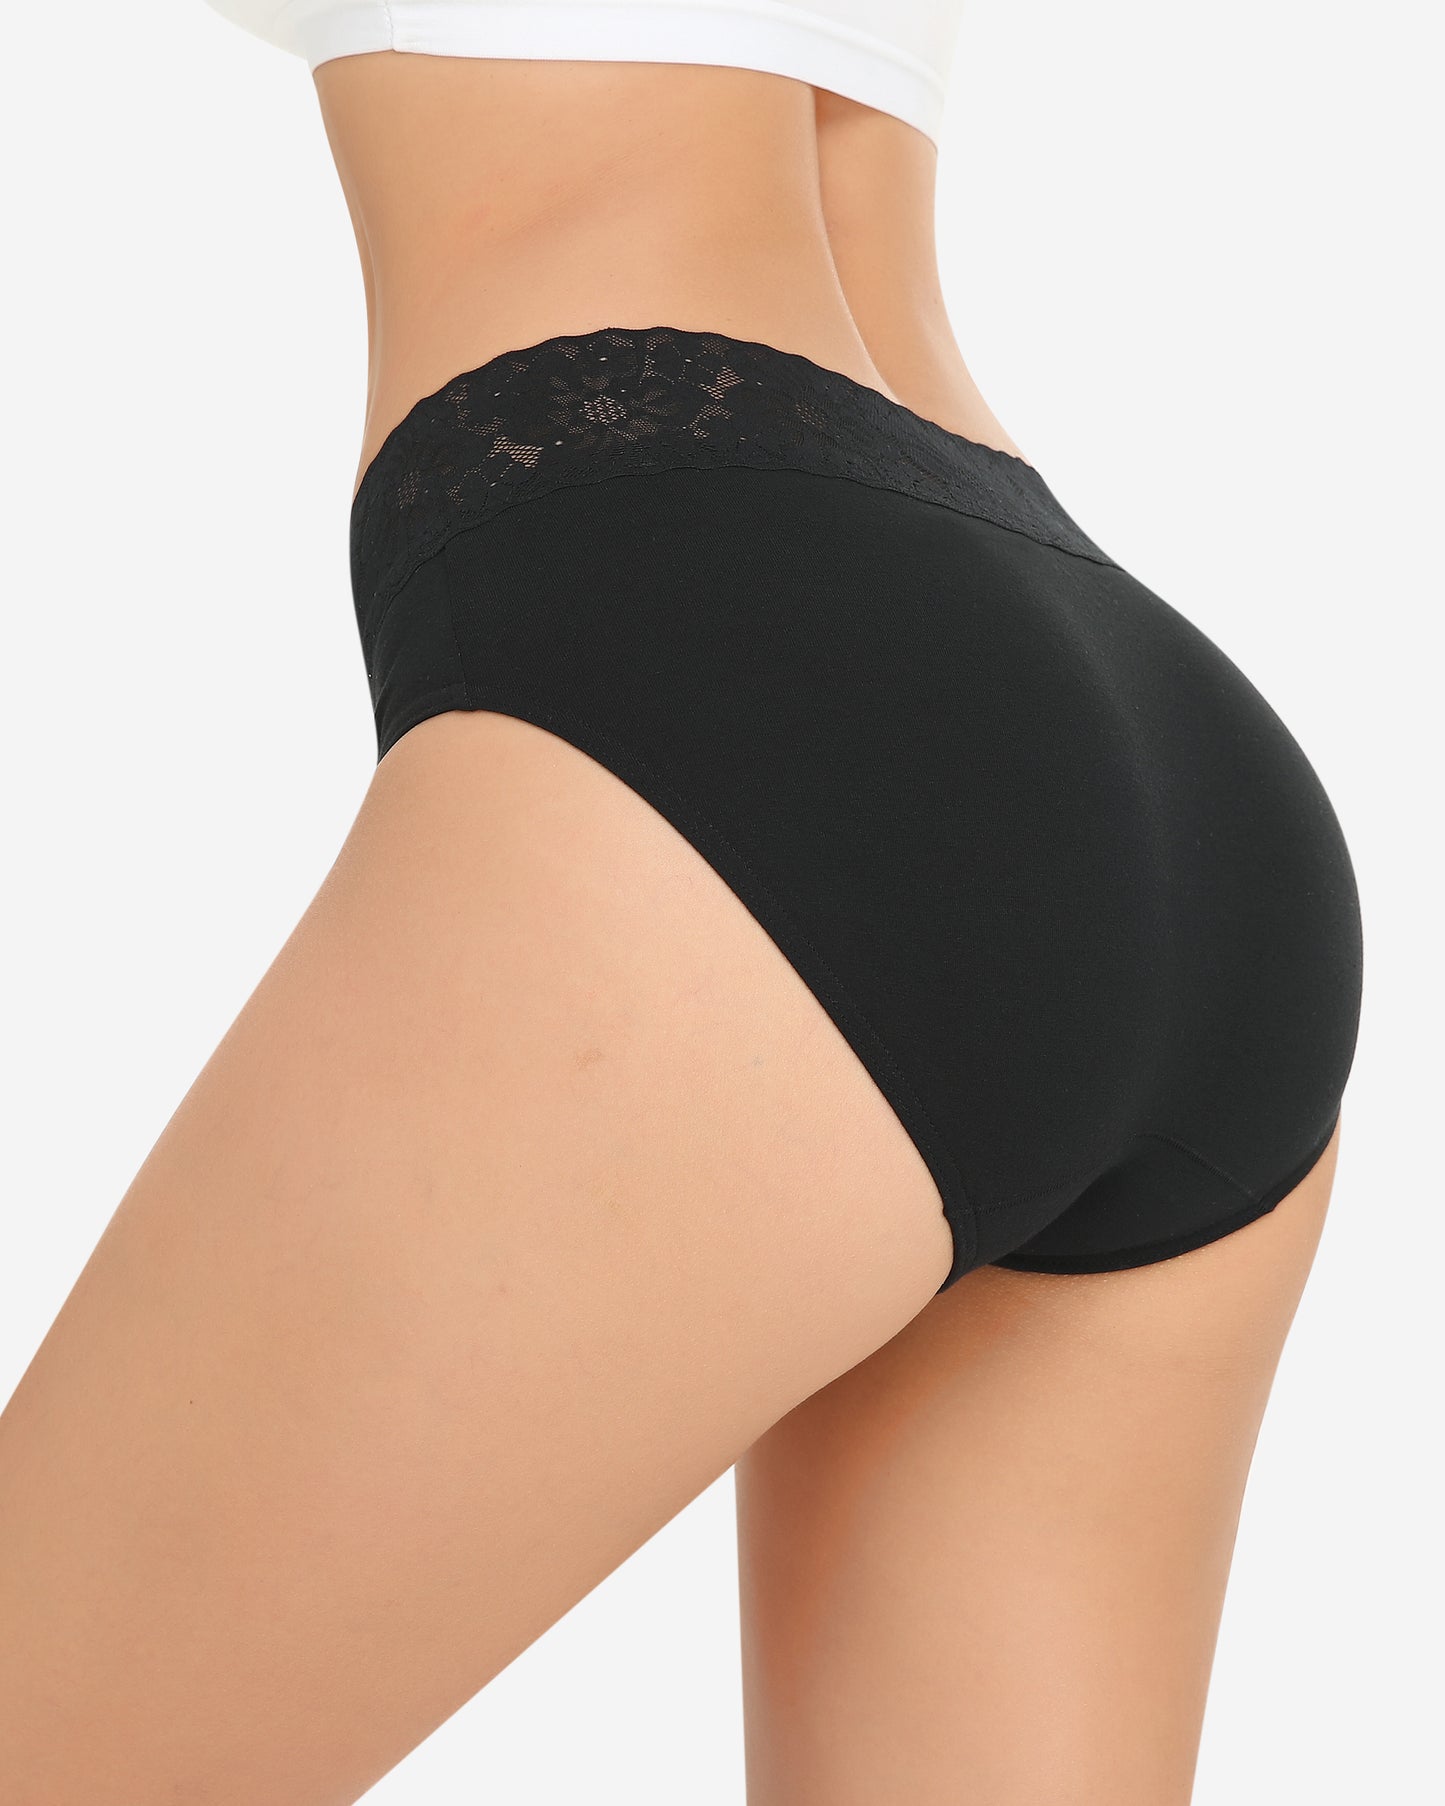 Wealurre Women's Underwear Lace balck Briefs Cotton Hipster - wealurre